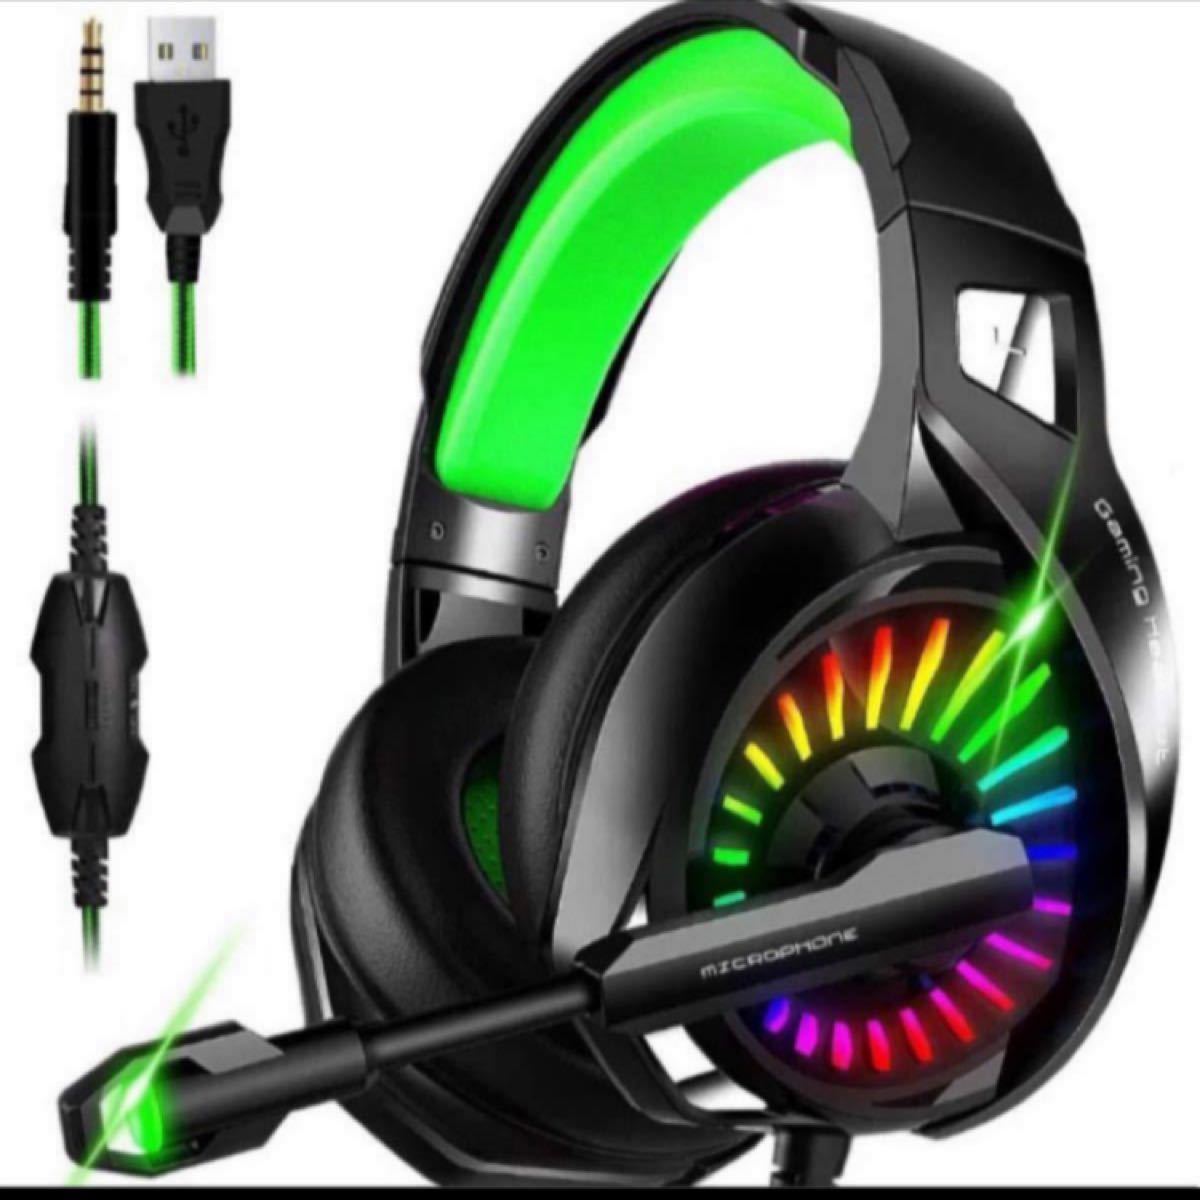 ゲーミングヘッドセット PS4 ゲーム用ヘッドフォン 超高音質 低音強化 有線 マイク付き 虹色LEDライト 超軽量